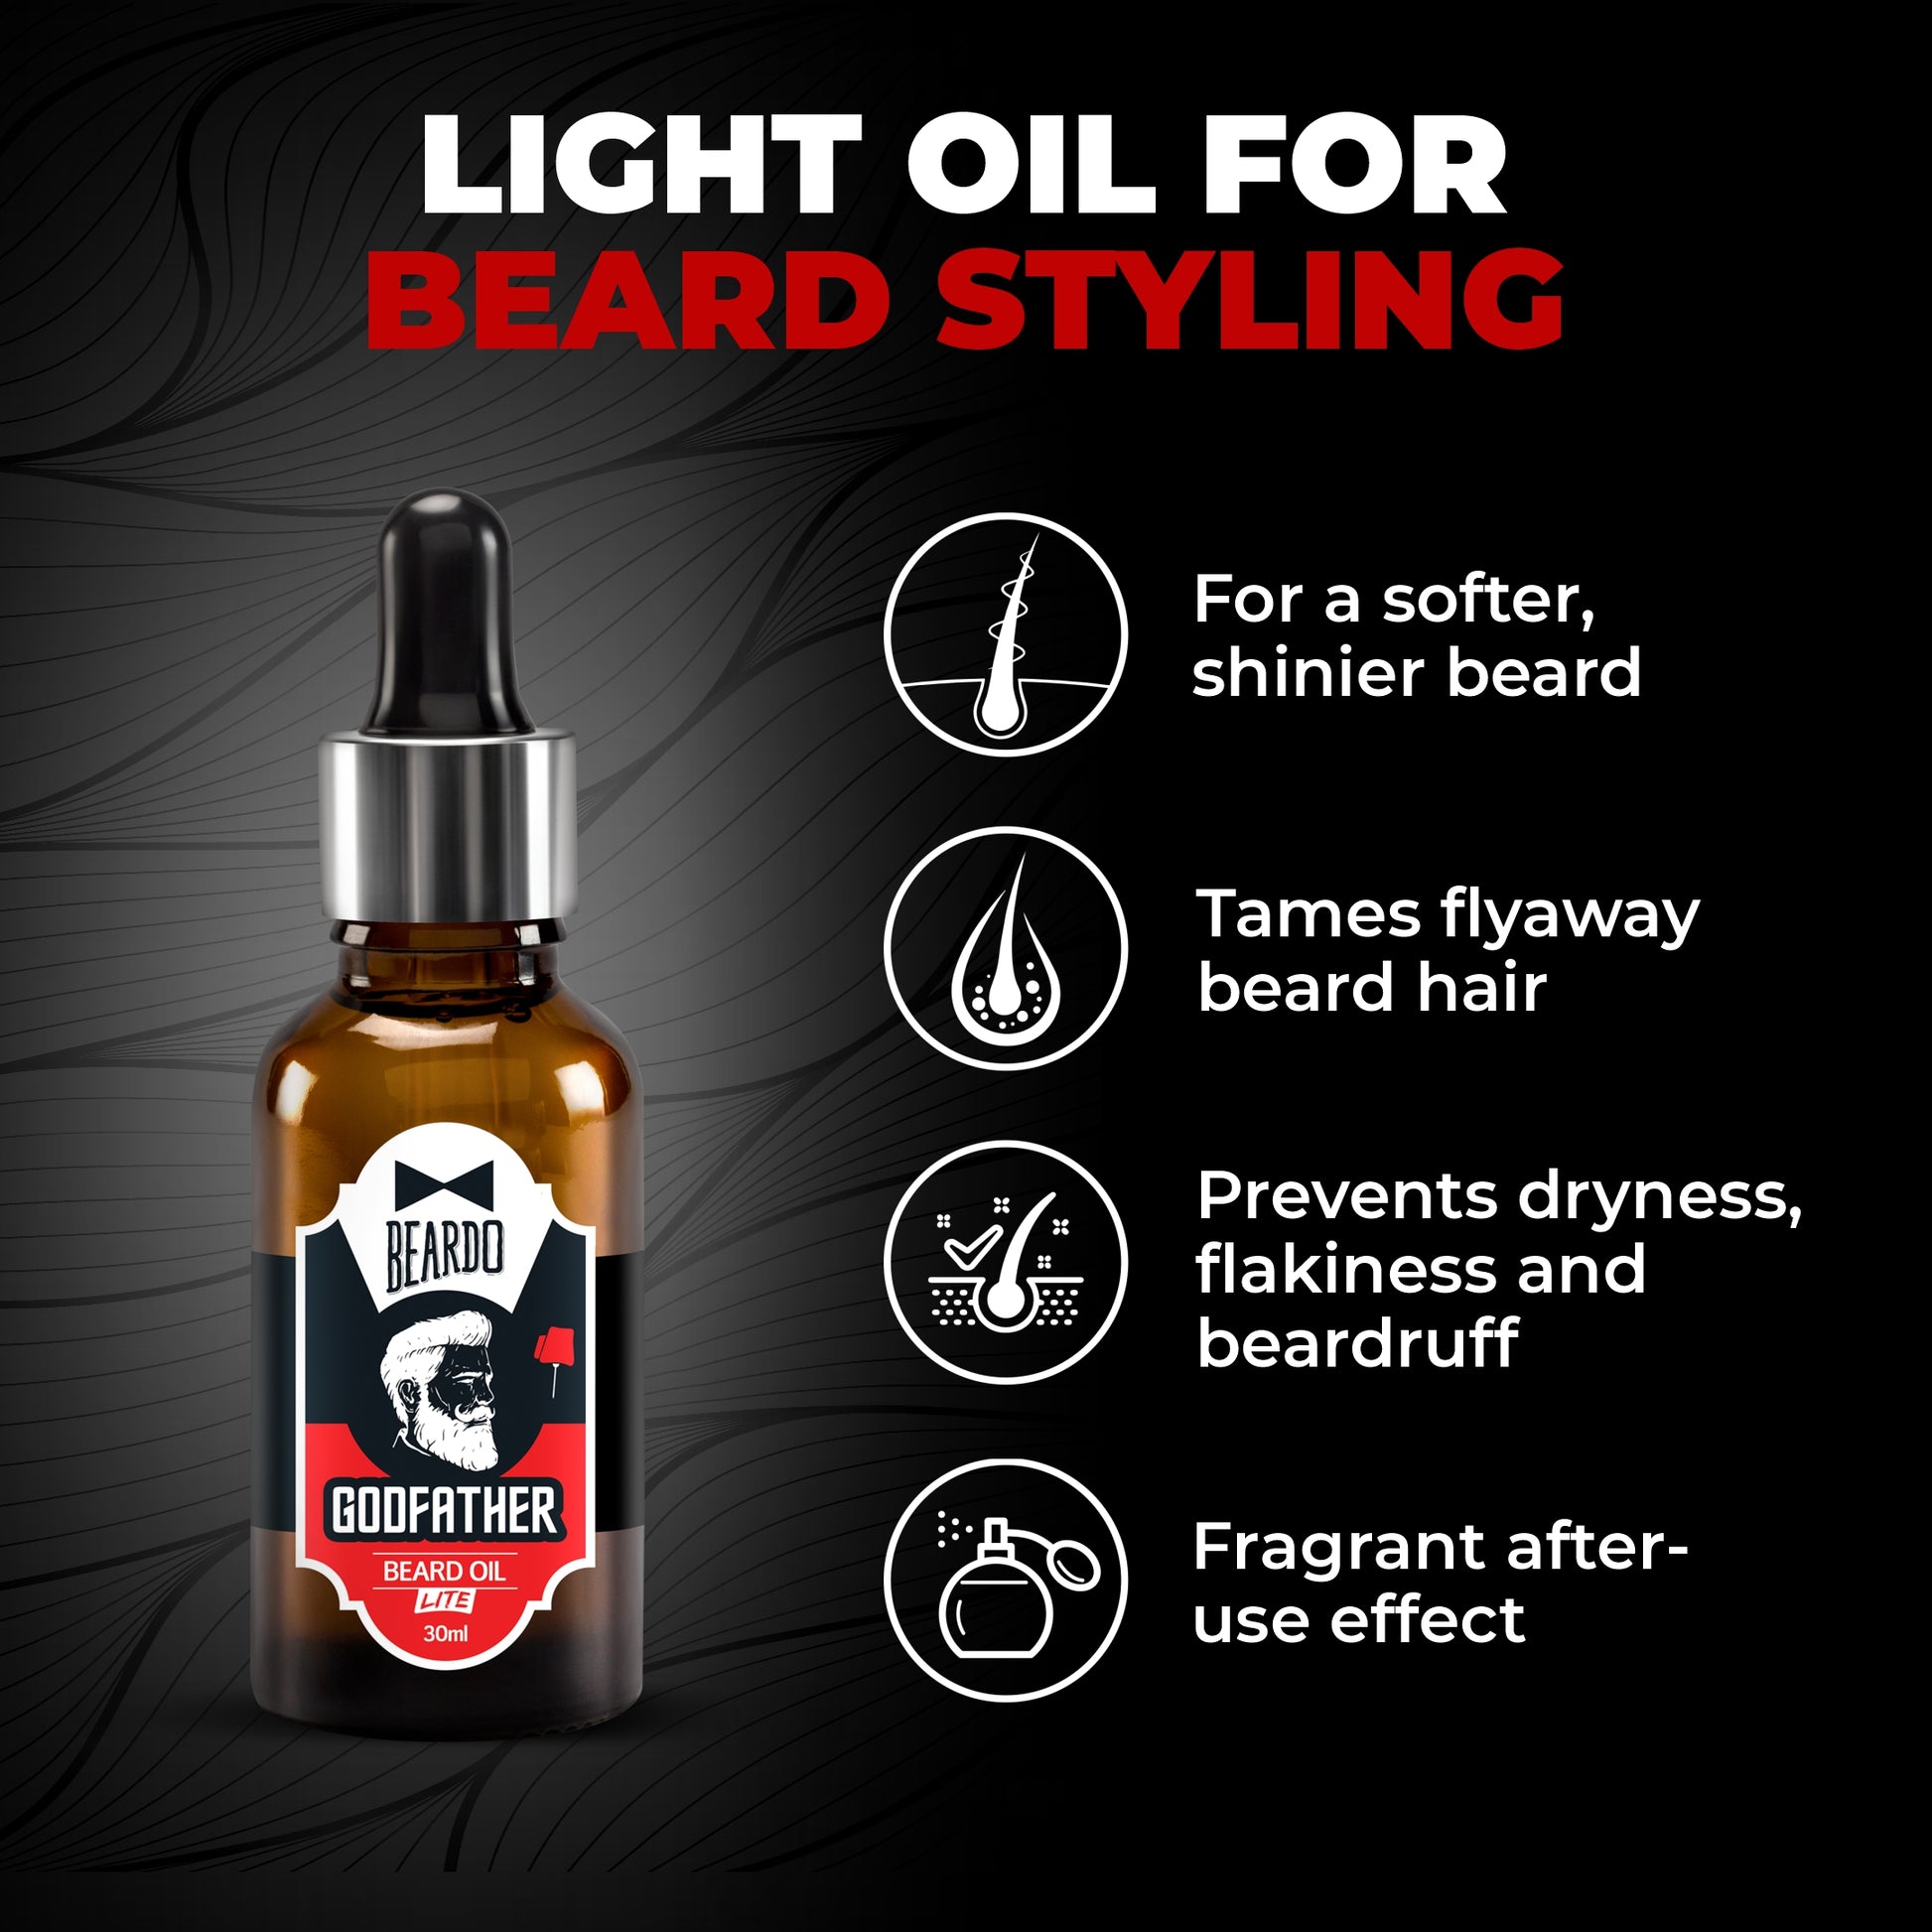 Beardo 5-in-1 Ultimate Grooming Gift set for Men